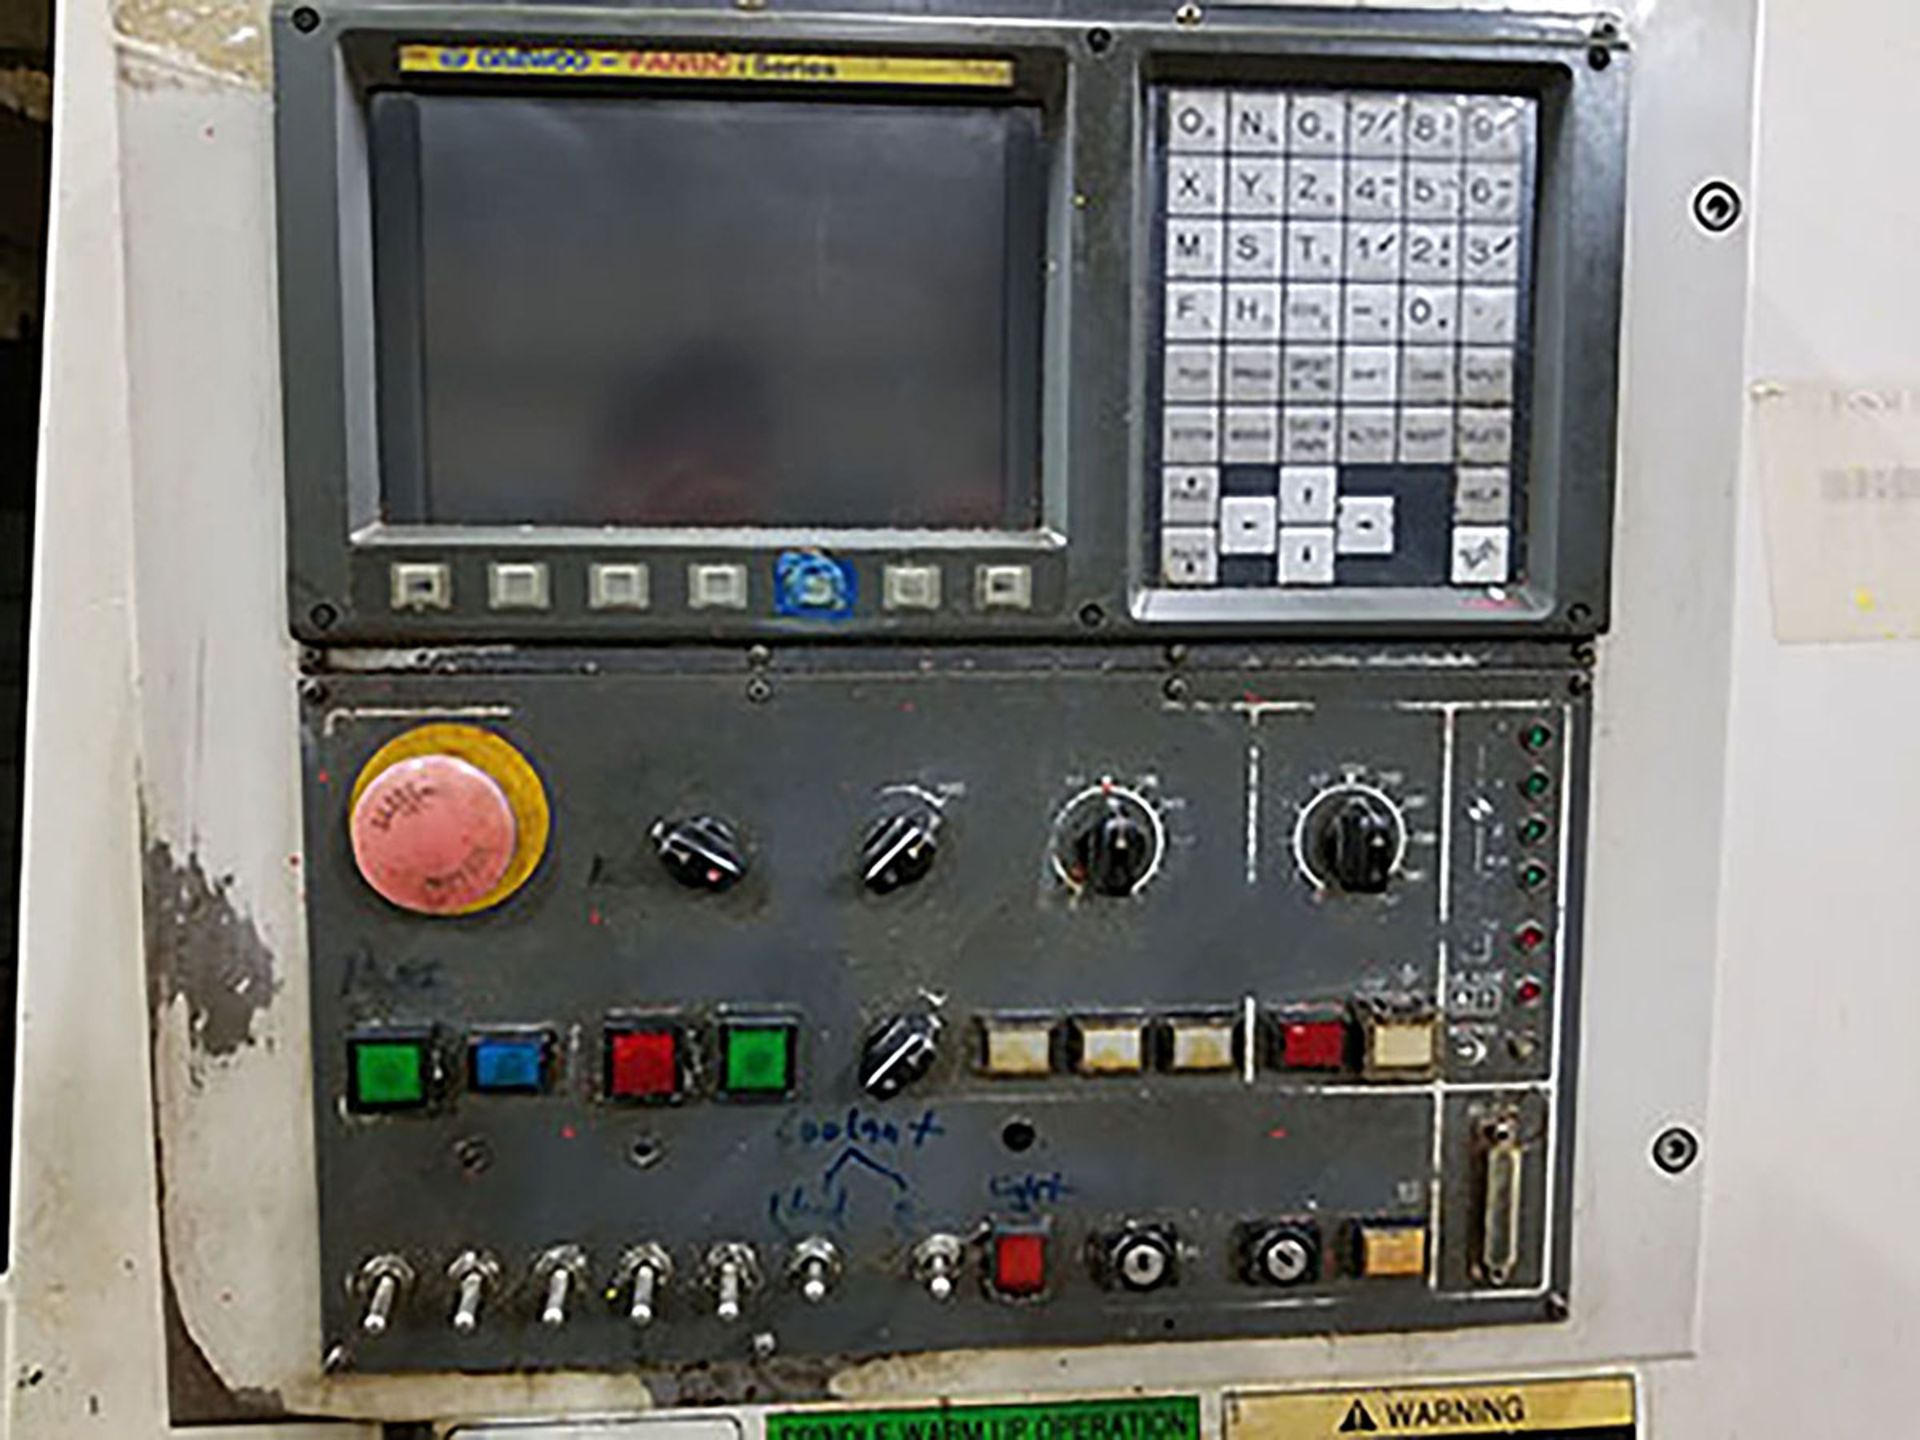 DAEWOO DMV3016 CNC VMC; 24-POS ATC, COOLANT SYSTEM, DAEWOO FANUC SERIES CONTROL, S/N AV4E0217 - Bild 7 aus 7